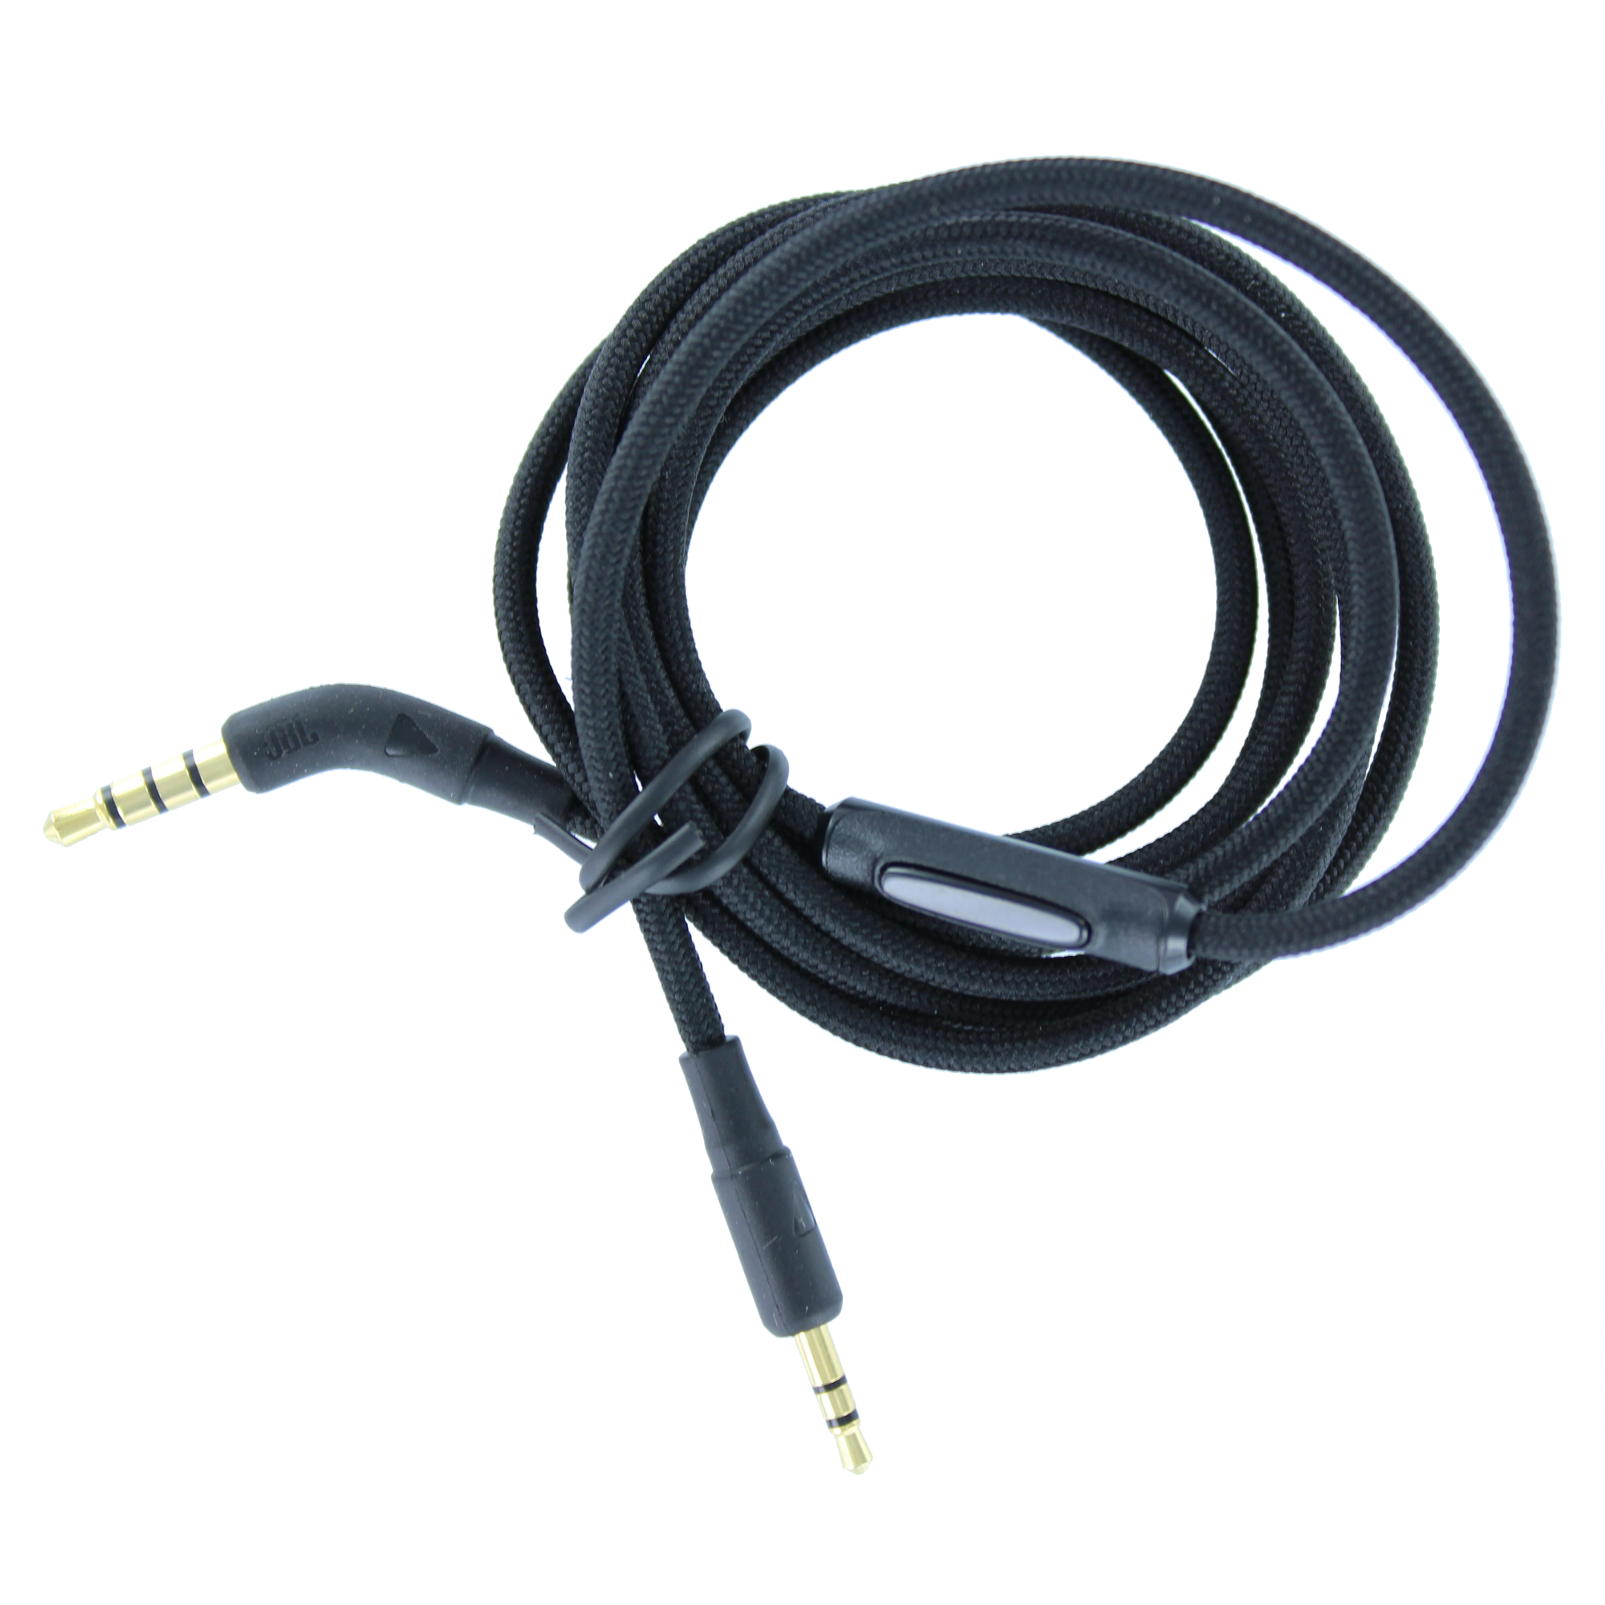 micity Cable de chapado en plata de reemplazo actualización Audio Cable de extensión Cable Lead para JBL Everest e45bt e50bt e55bt E30 auriculares 